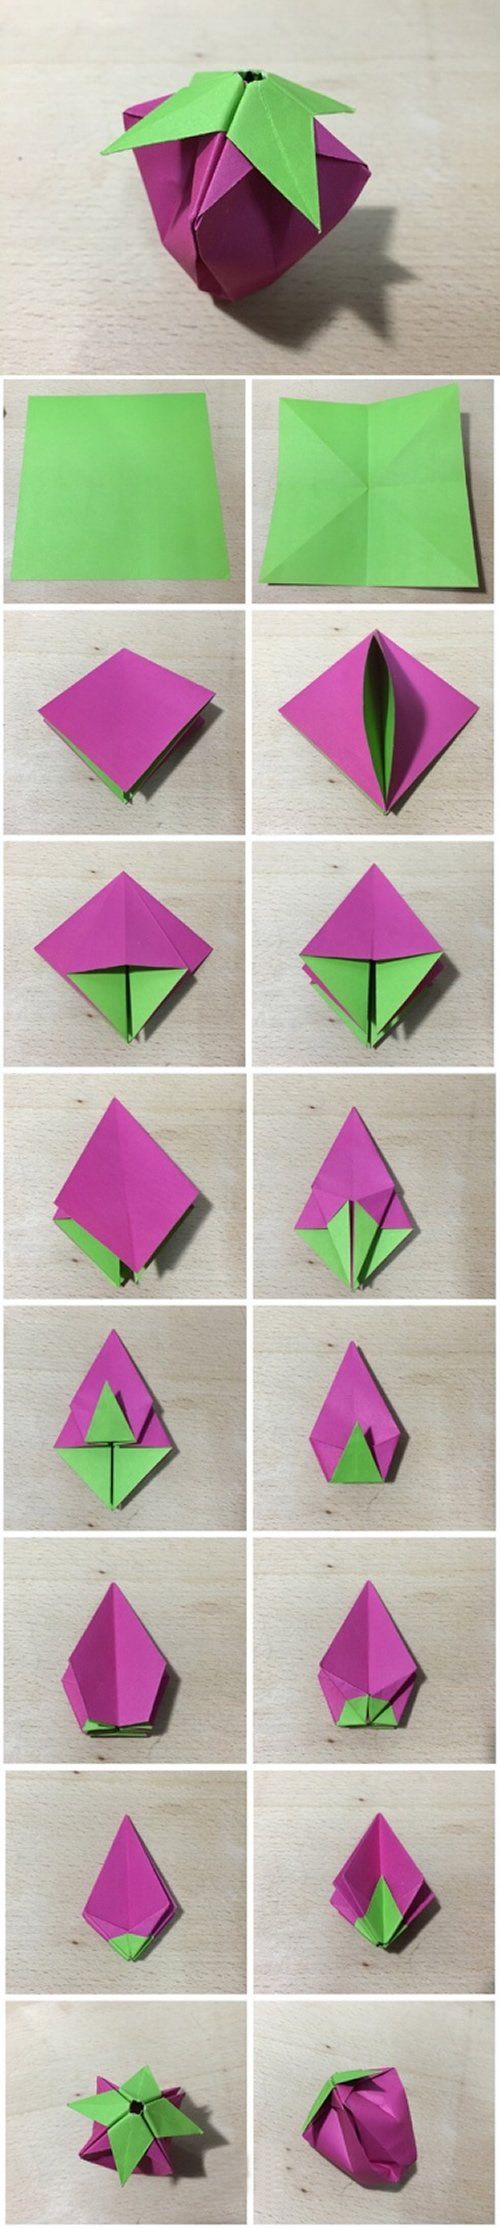 两种草莓的折纸方法图解步骤:分别是立体和扁平形态,难度一般般,喜欢